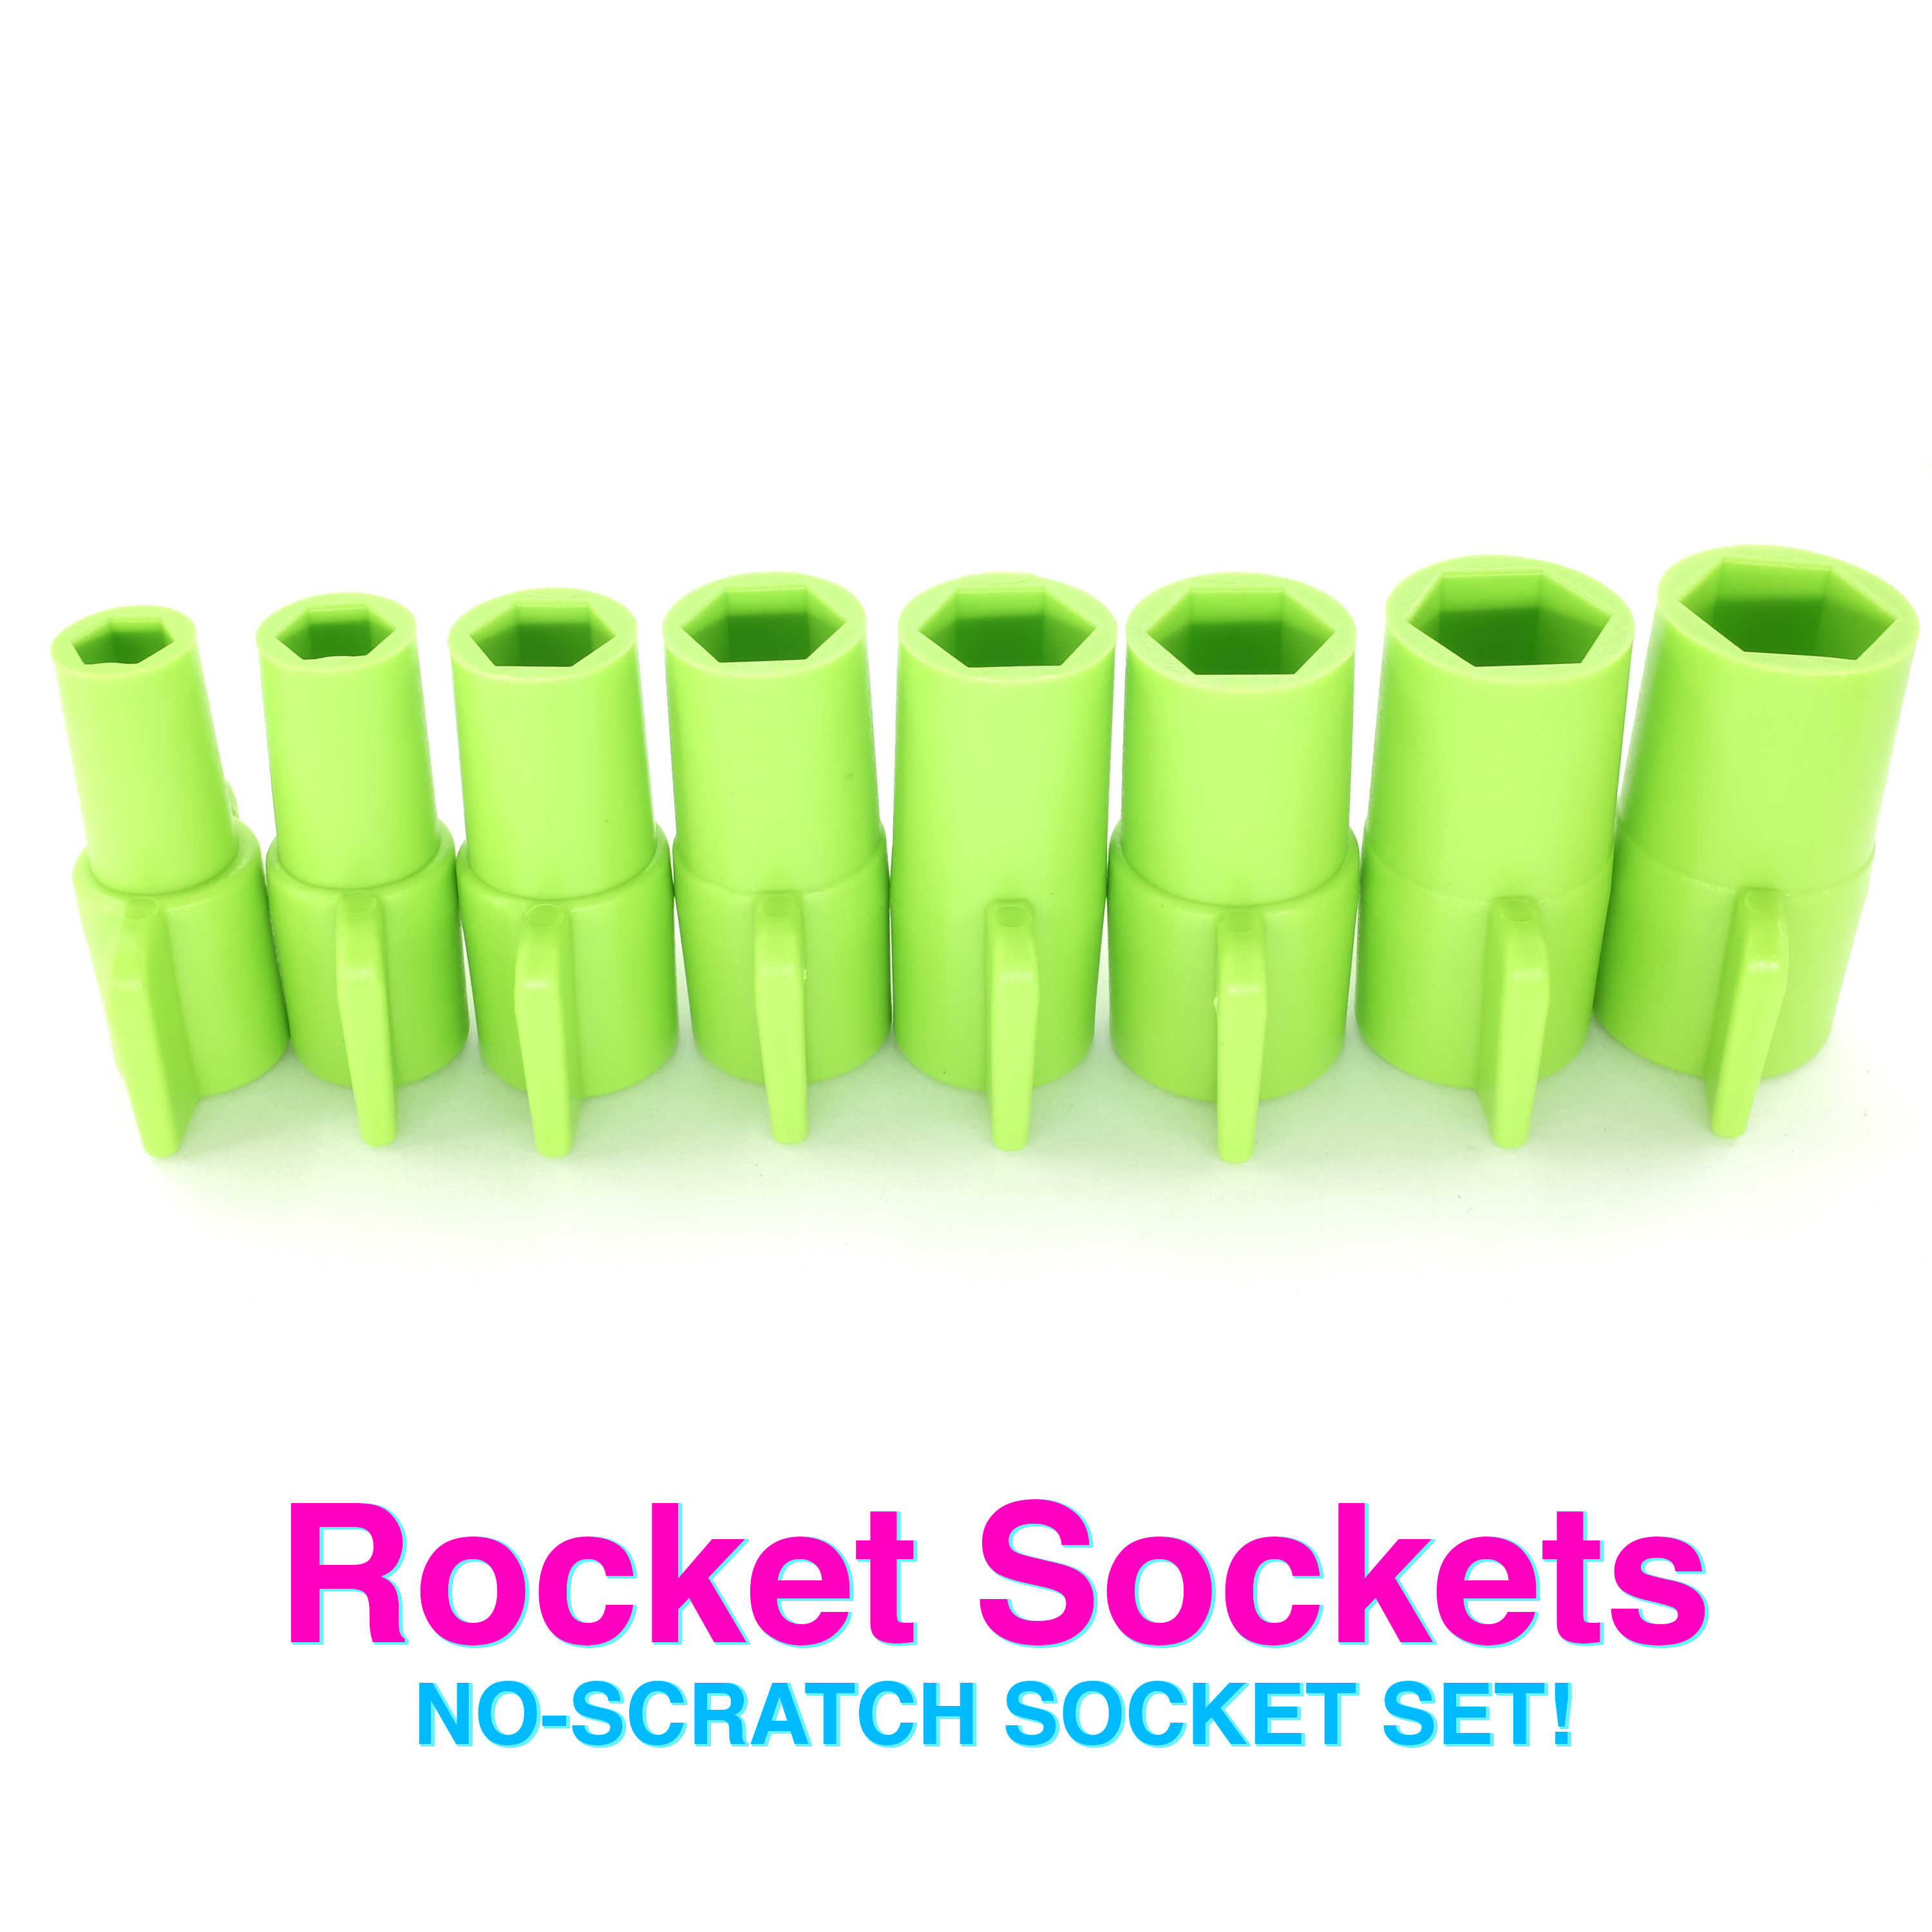 Rocket Sockets